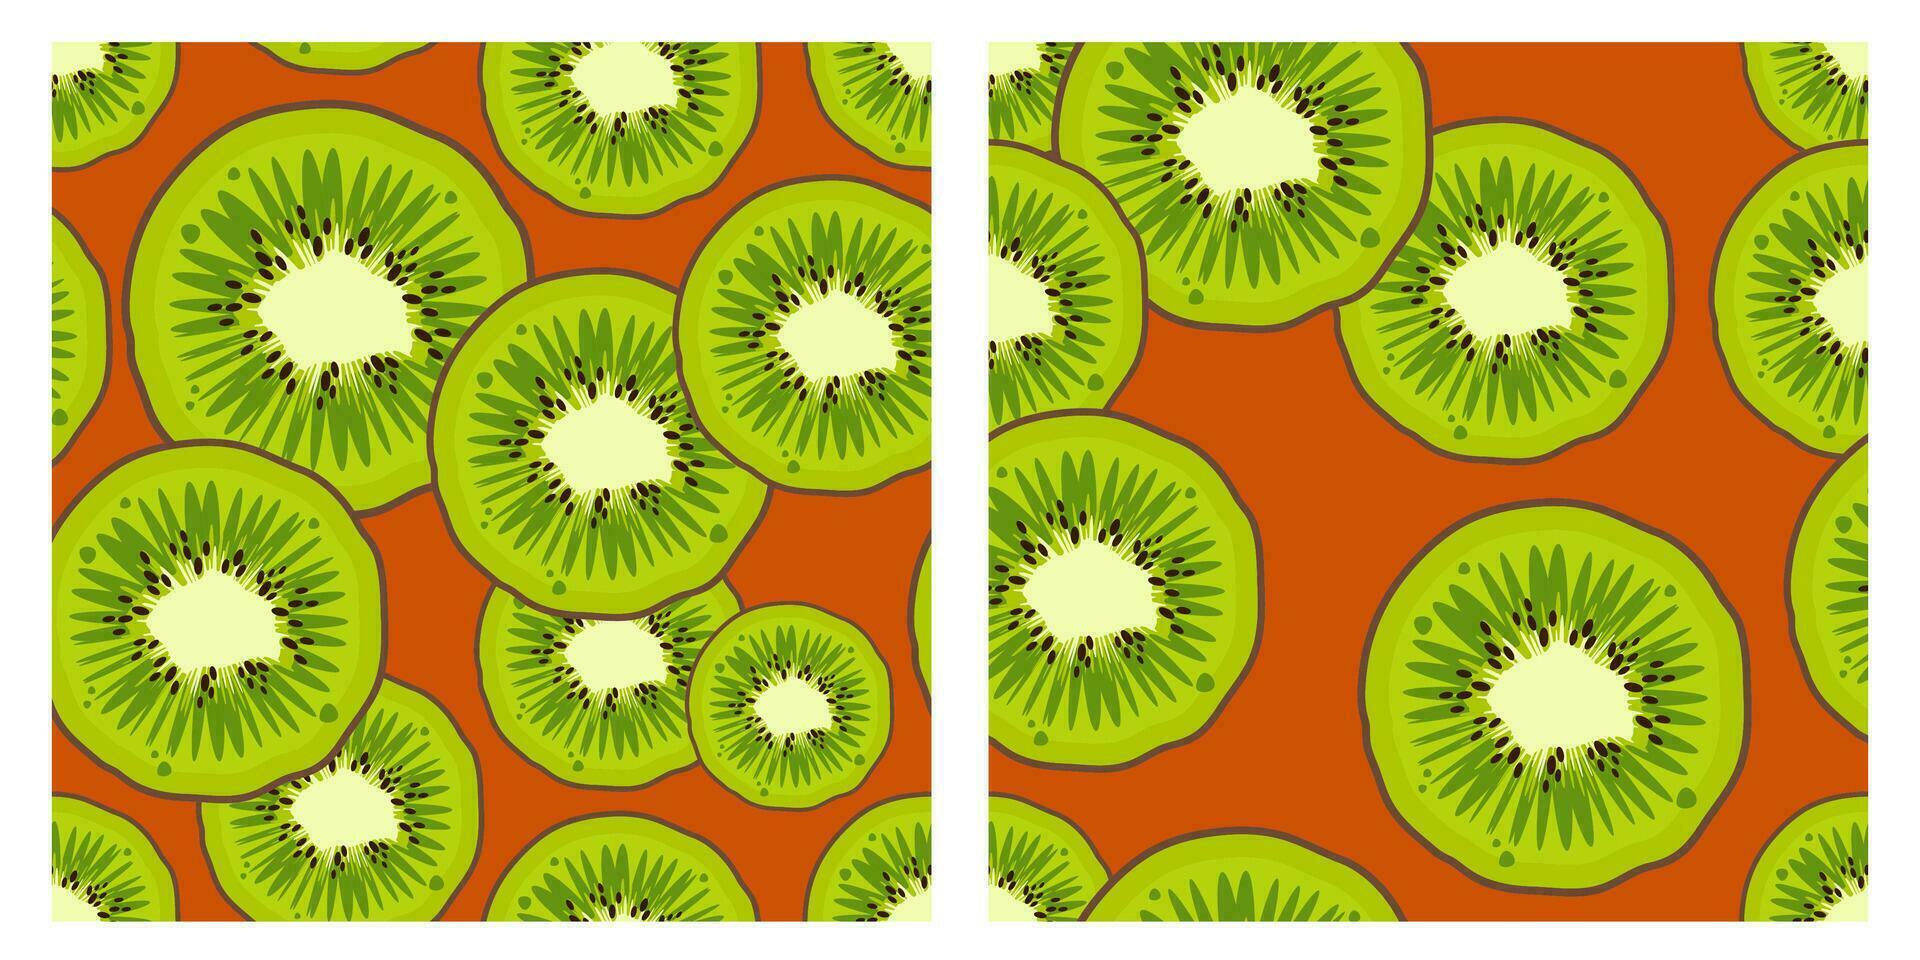 einstellen von Kiwi Obst muster.trendy hell Design exotisch Früchte auf Orange Hintergrund. frisch saftig Grün Früchte. Vektor Illustration zum Tapeten,Textil, Netz, Anwendung, Notizbücher, Fall, Verpackung Papier